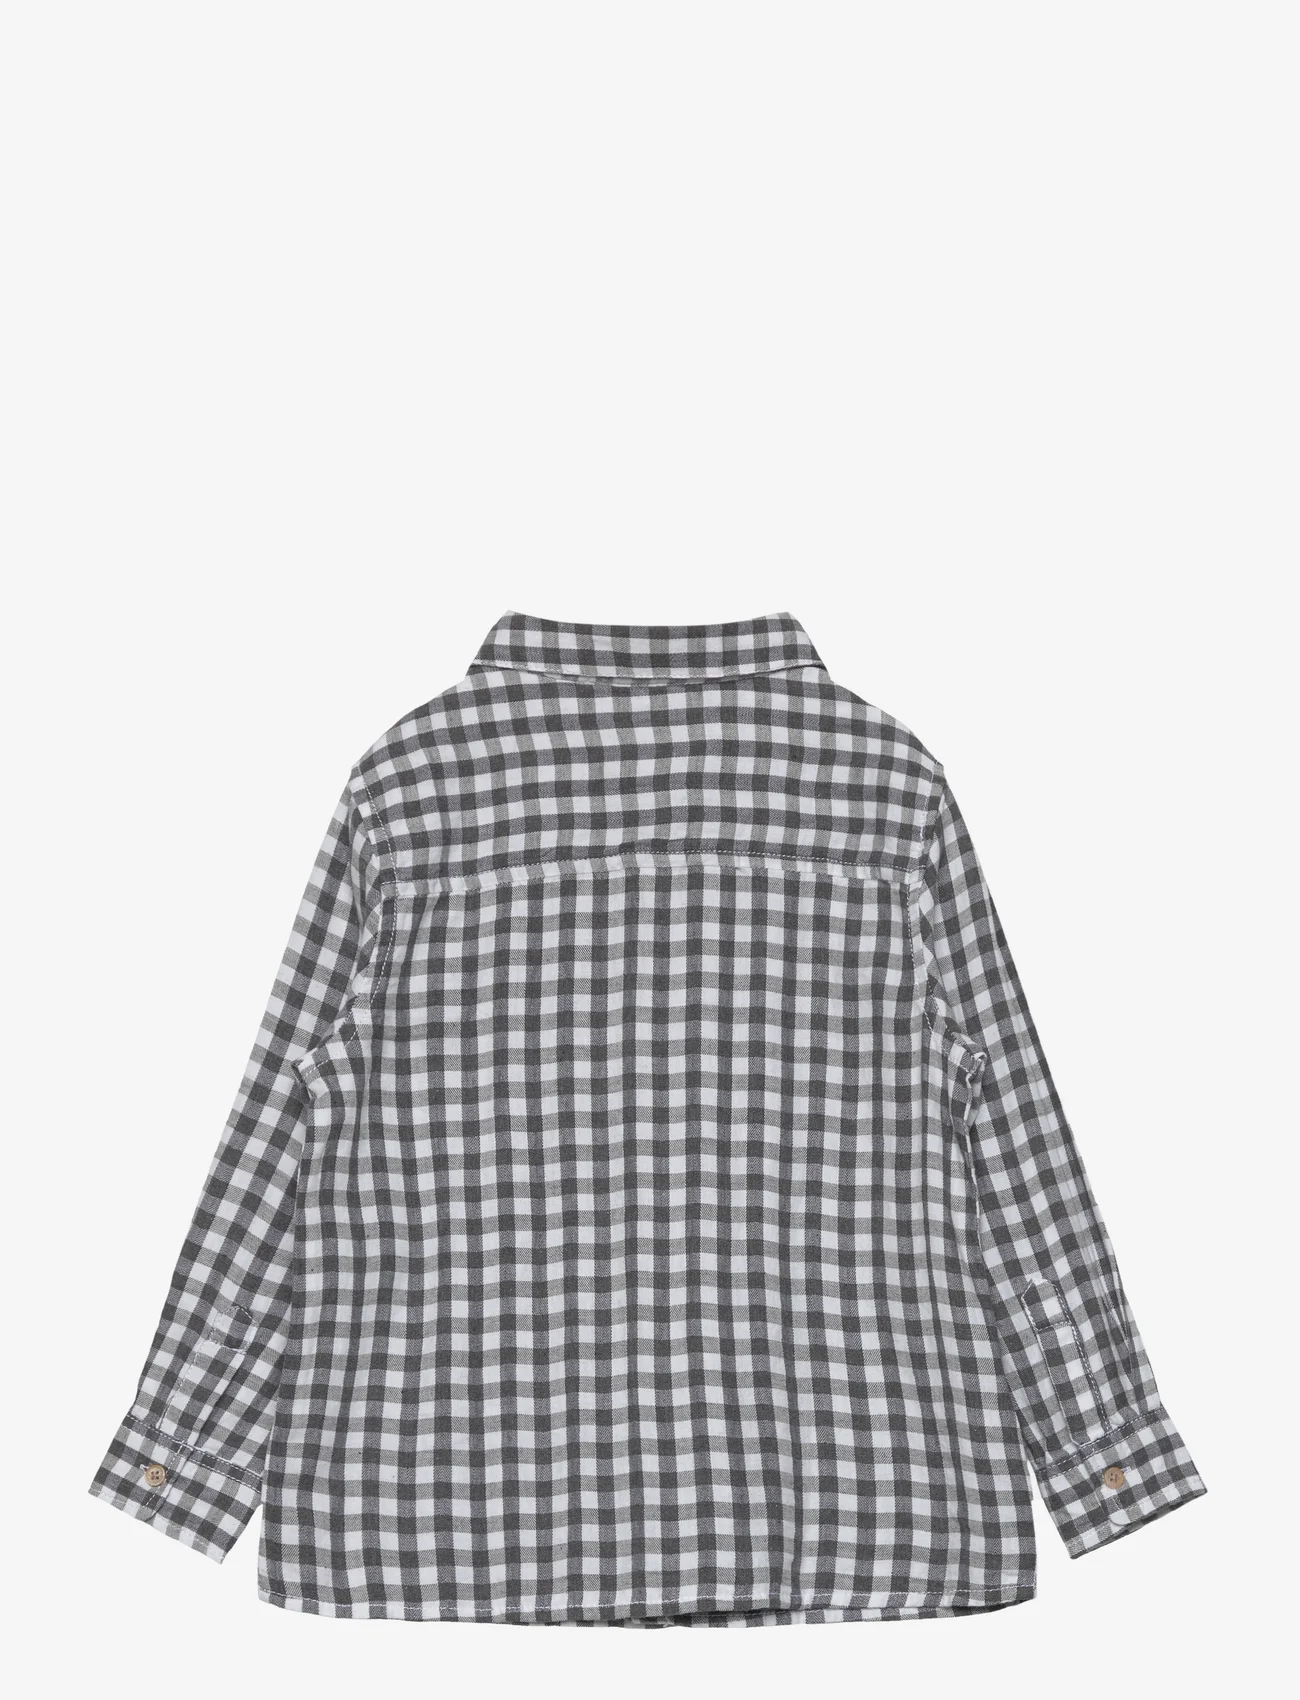 Mango - Regular-fit check shirt - pitkähihaiset kauluspaidat - medium grey - 1